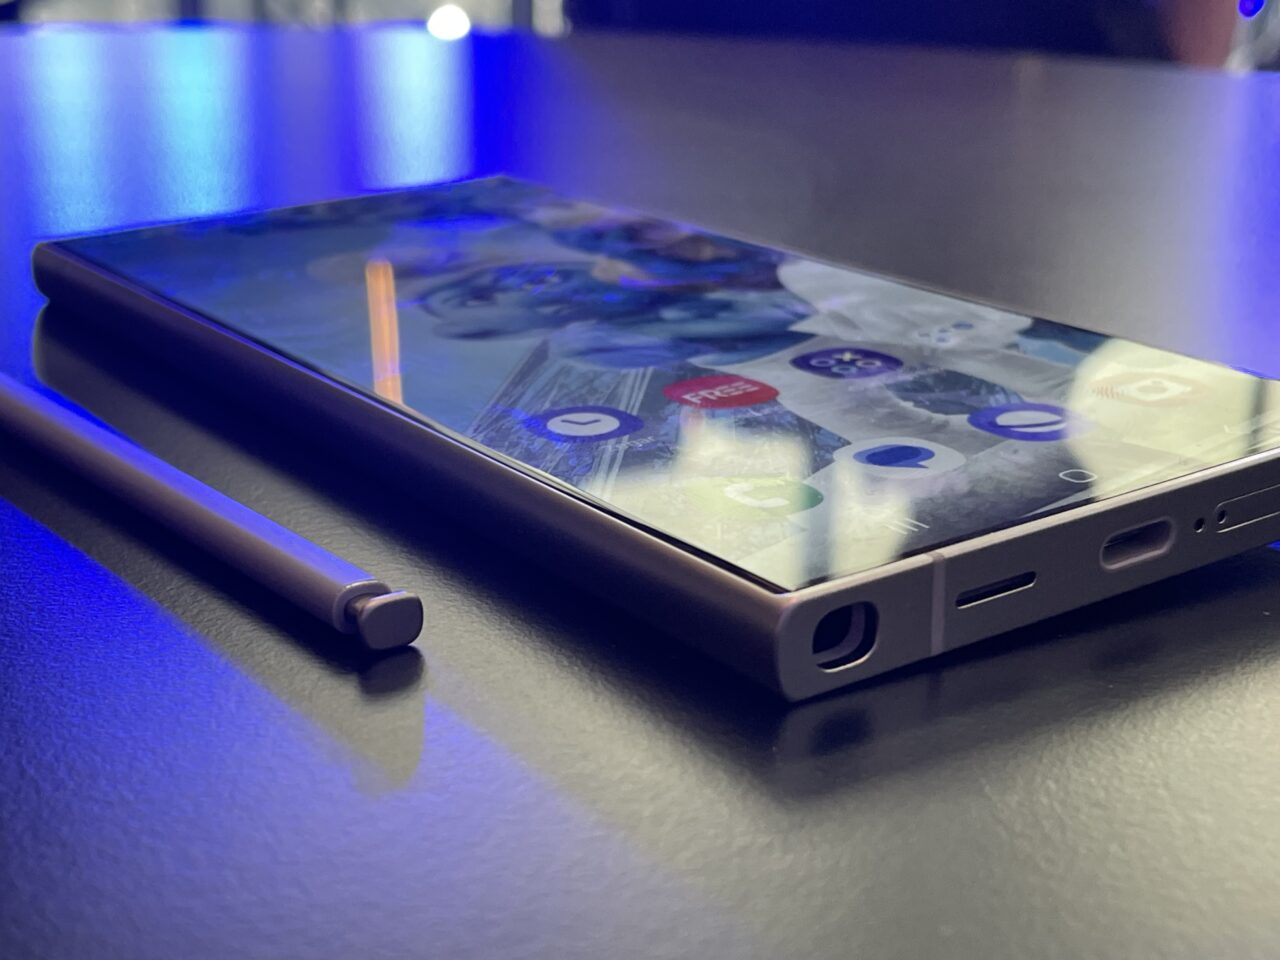 Nowoczesny smartfon Samsung Galaxy S24 Ultra leżący na błękitnej powierzchni obok cyfrowego rysika, z odbiciem świateł w tle.